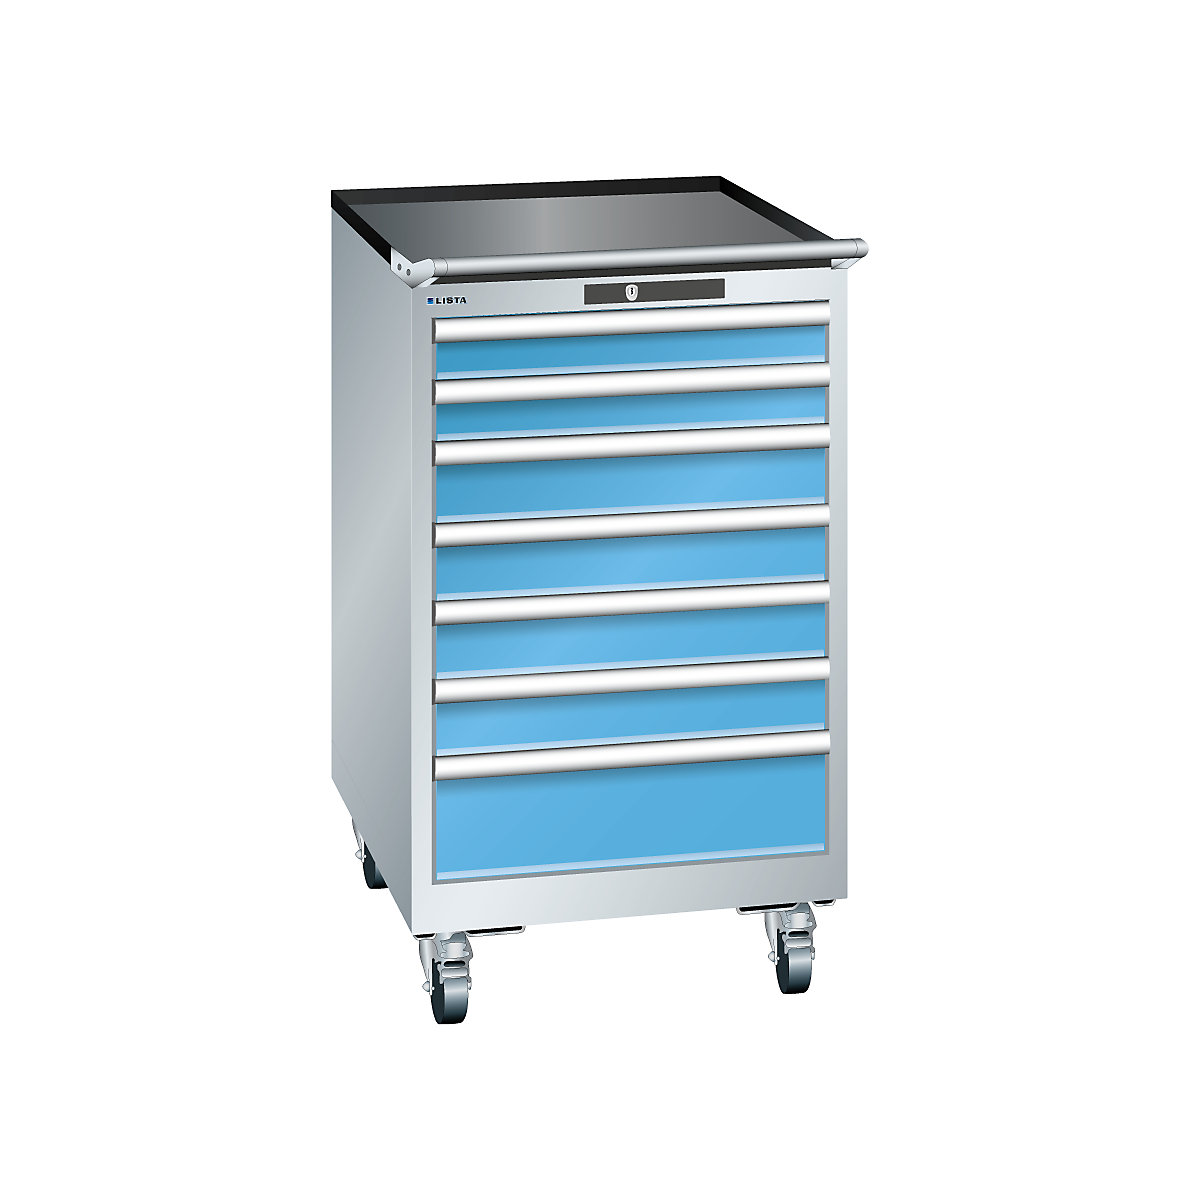 LISTA – Armoire à tiroirs en tôle d'acier, h x l 990 x 564 mm, 7 tiroirs, mobile, gris clair / bleu clair